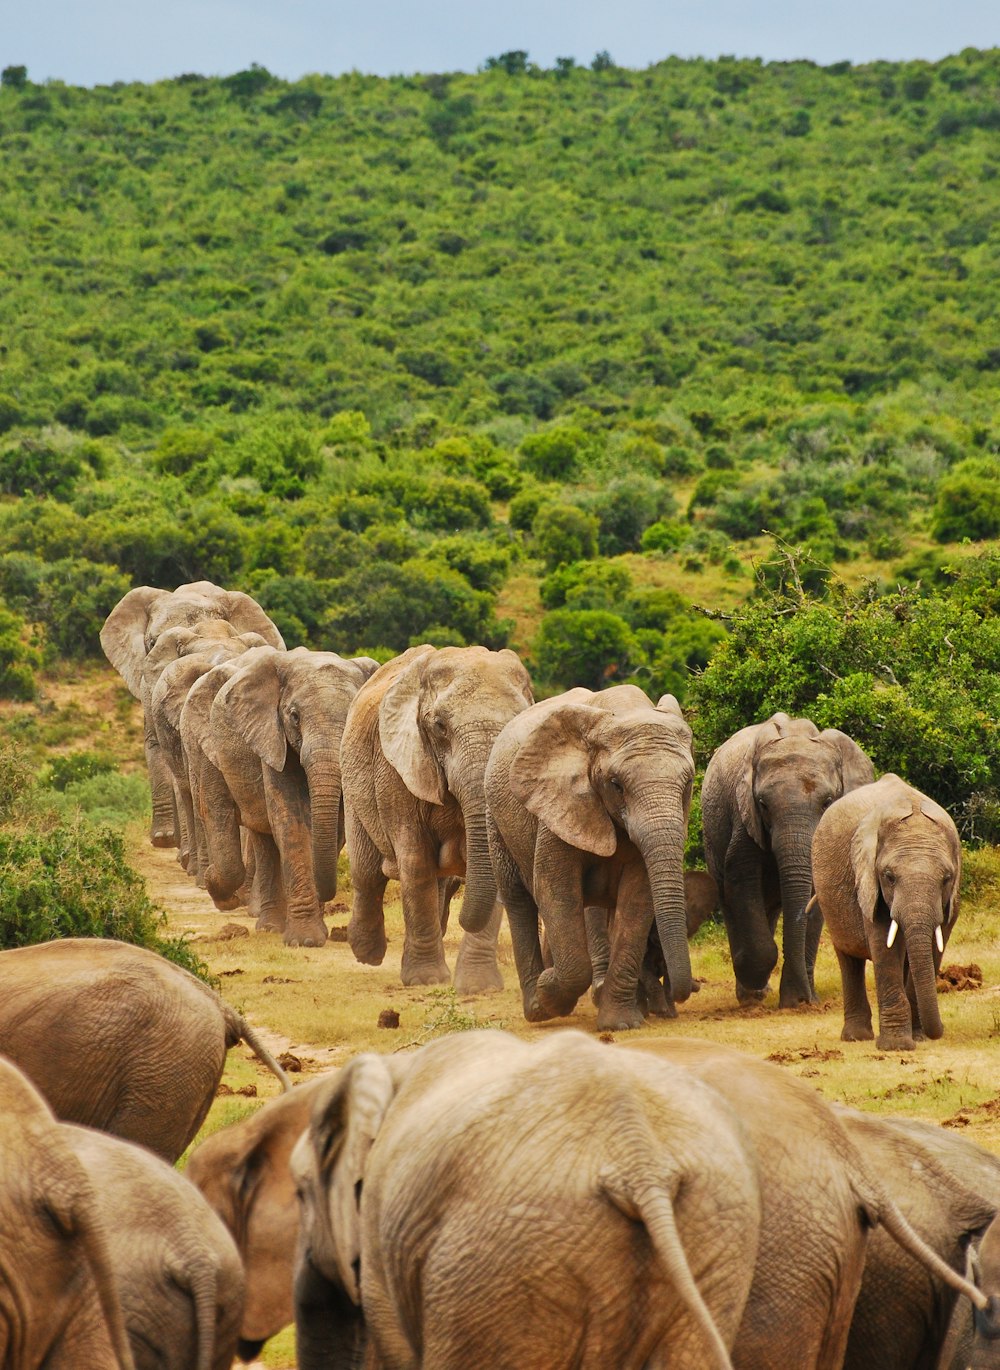 a herd of elephants walking down a dirt road